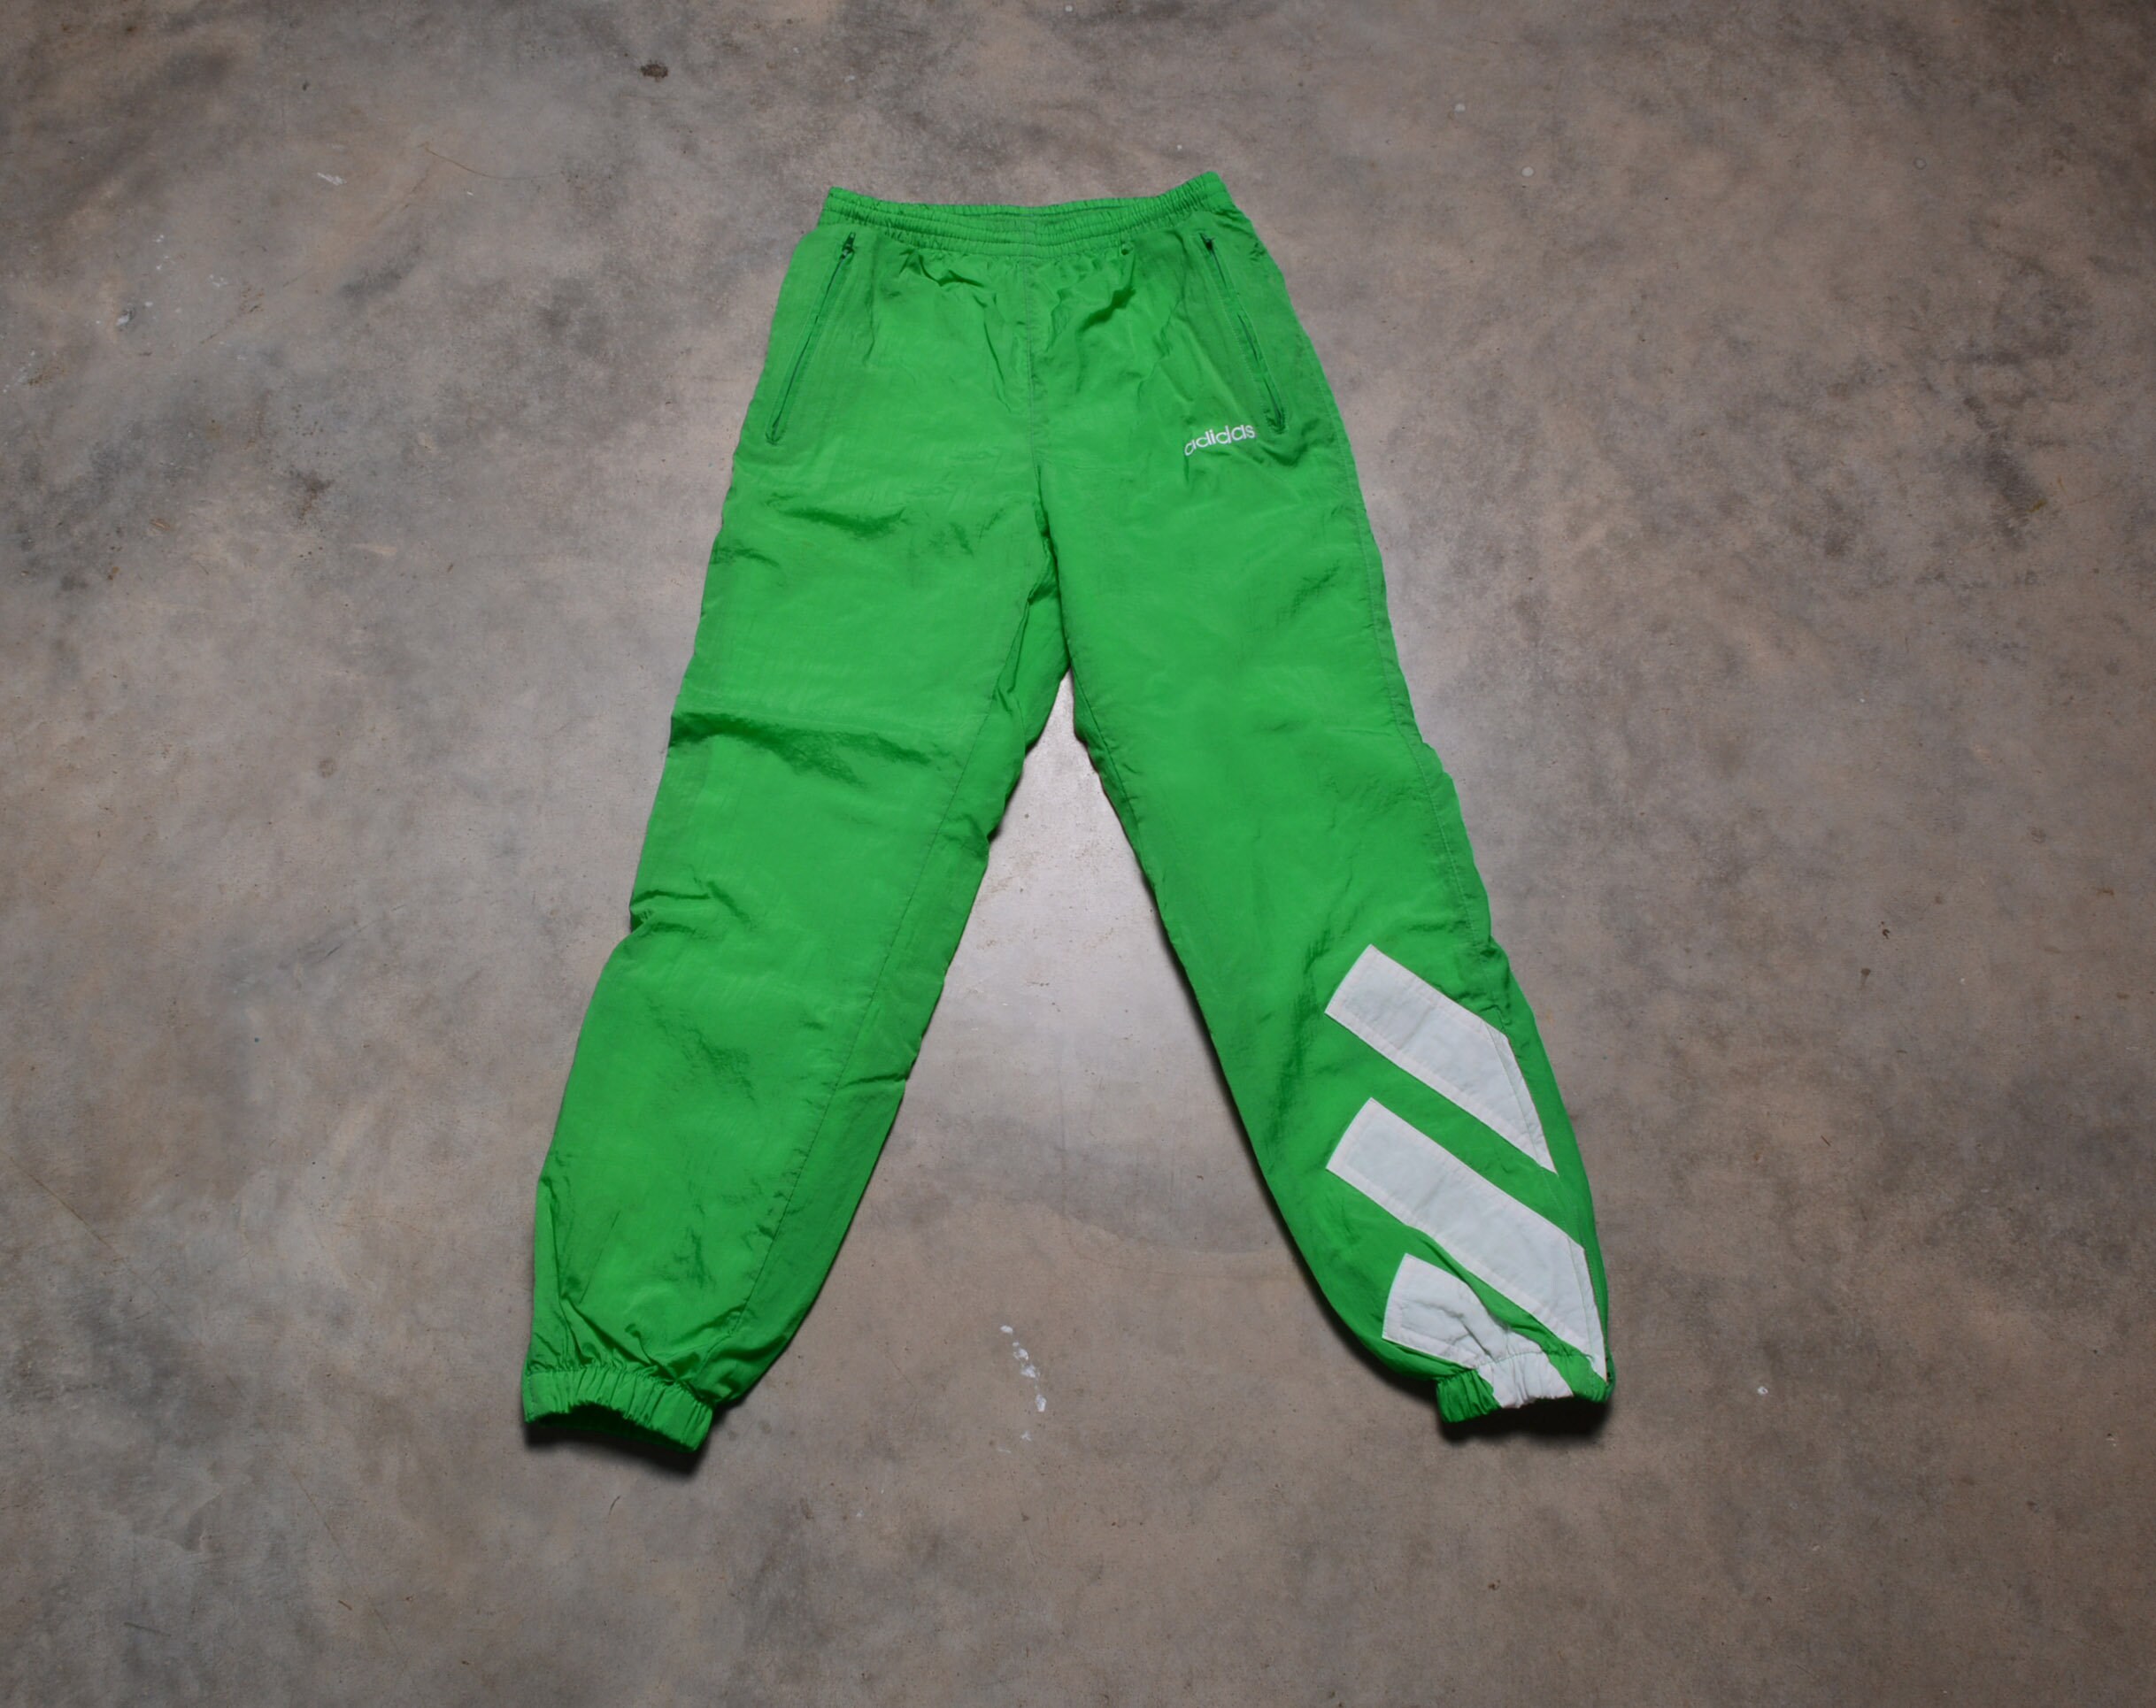 Pantalones holgados unisex de color verde oscuro para mujeres y